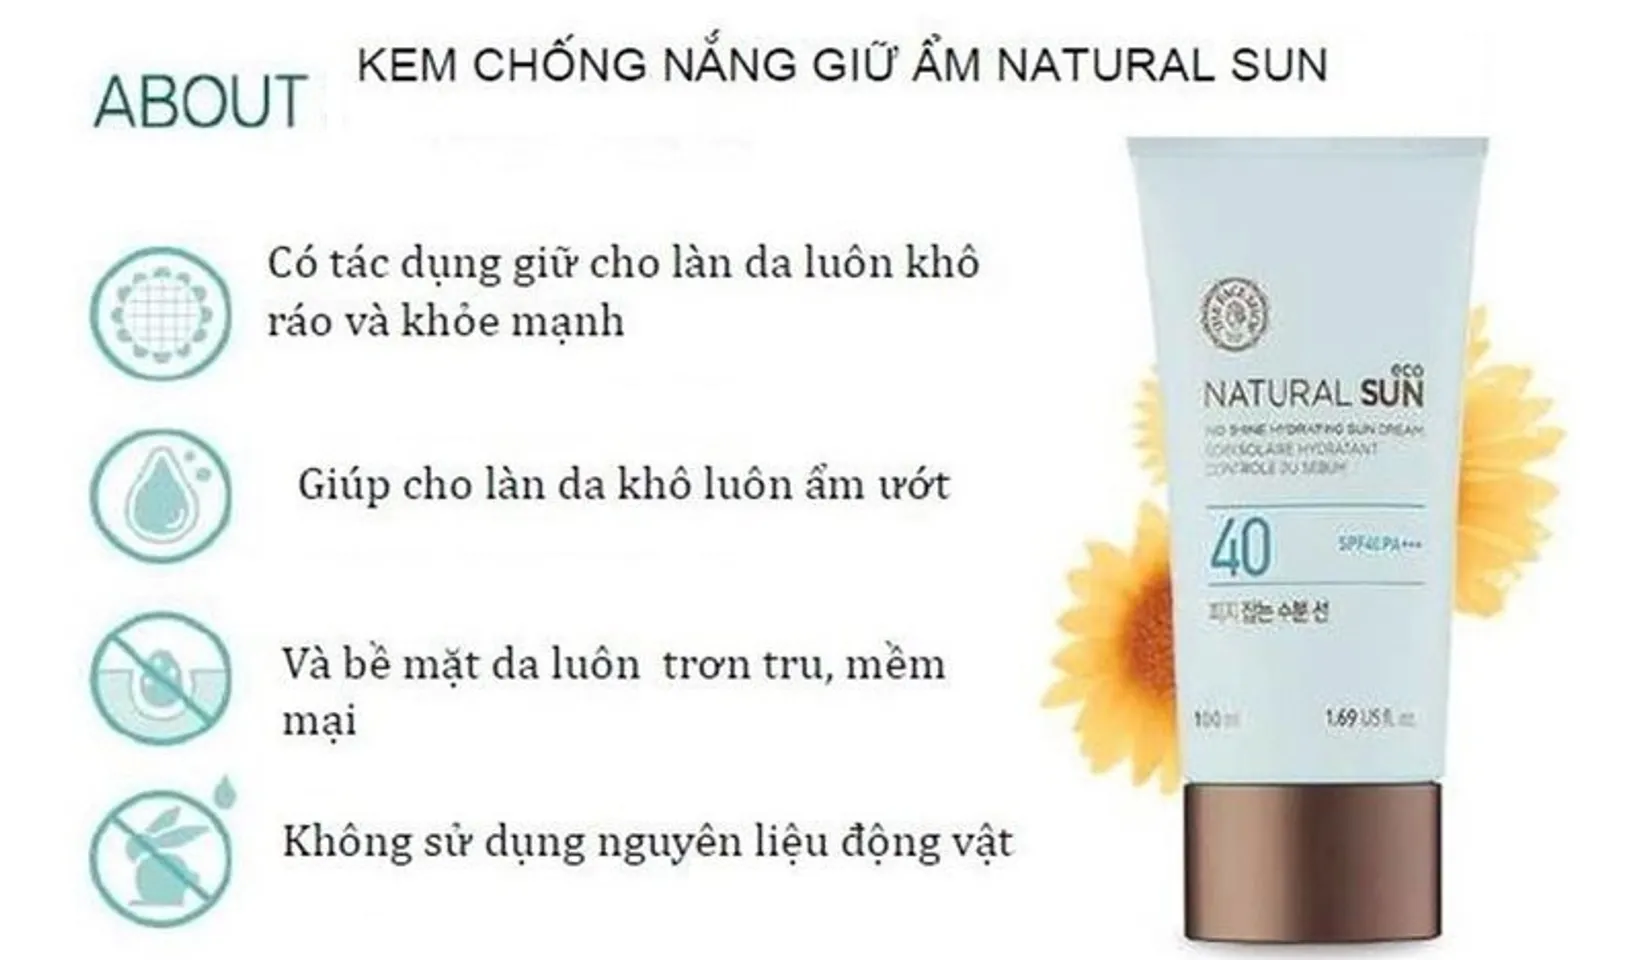 Kem chống nắng của The Face Shop Natural Sun Eco No Shine Hydrating Sun Cream SPF40 PA+++với 5000µg chiết xuất mầm hoa hướng dương, được chứng nhận bởi ECO-CERT